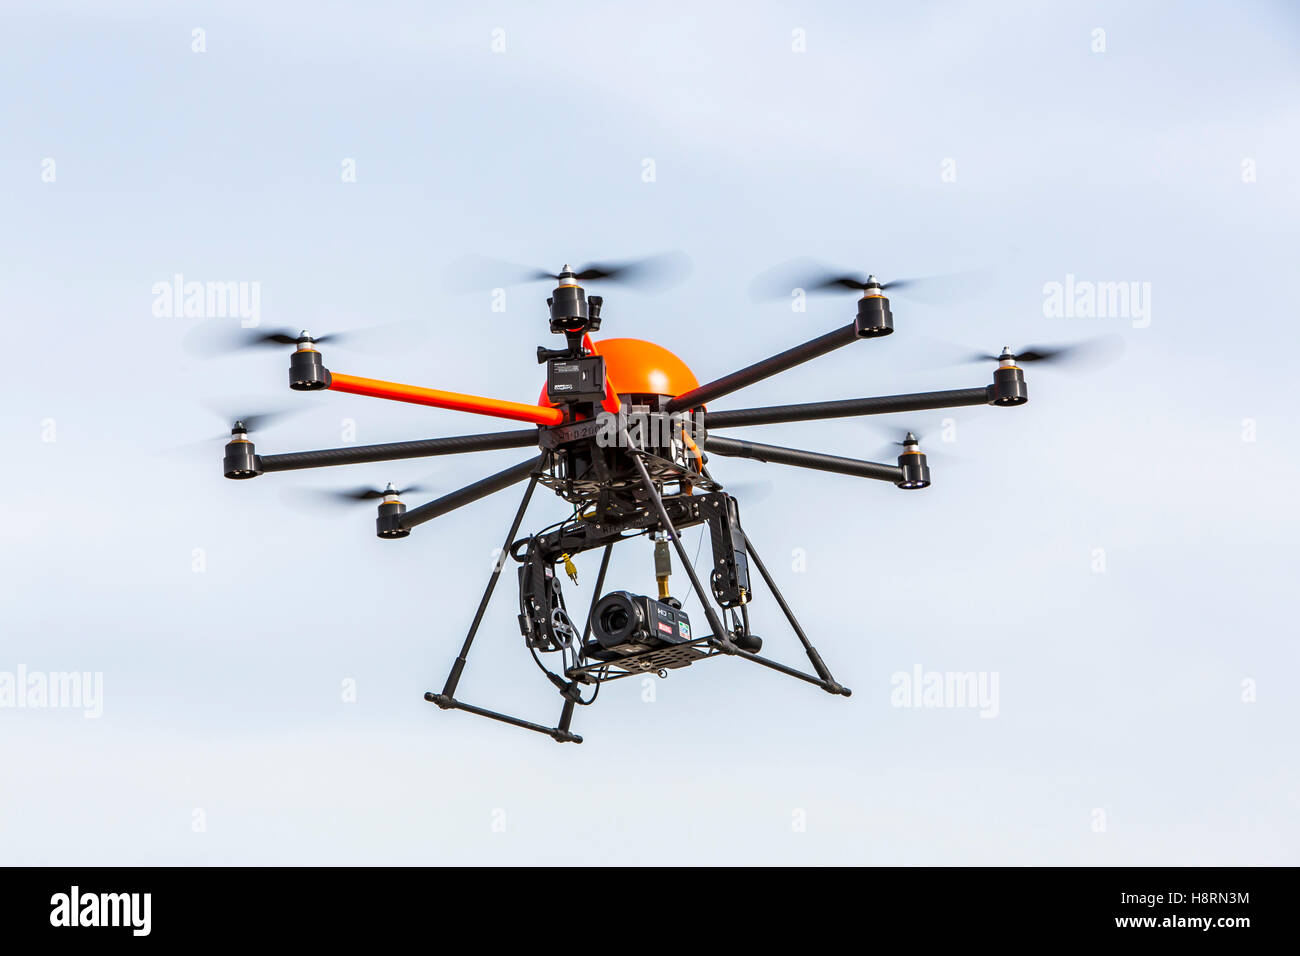 Drohne, Multi Copter, Oktokopter, mit einem Kamerasystem, professionelle Drohne zum areal fotografieren, Filmen, Stockfoto